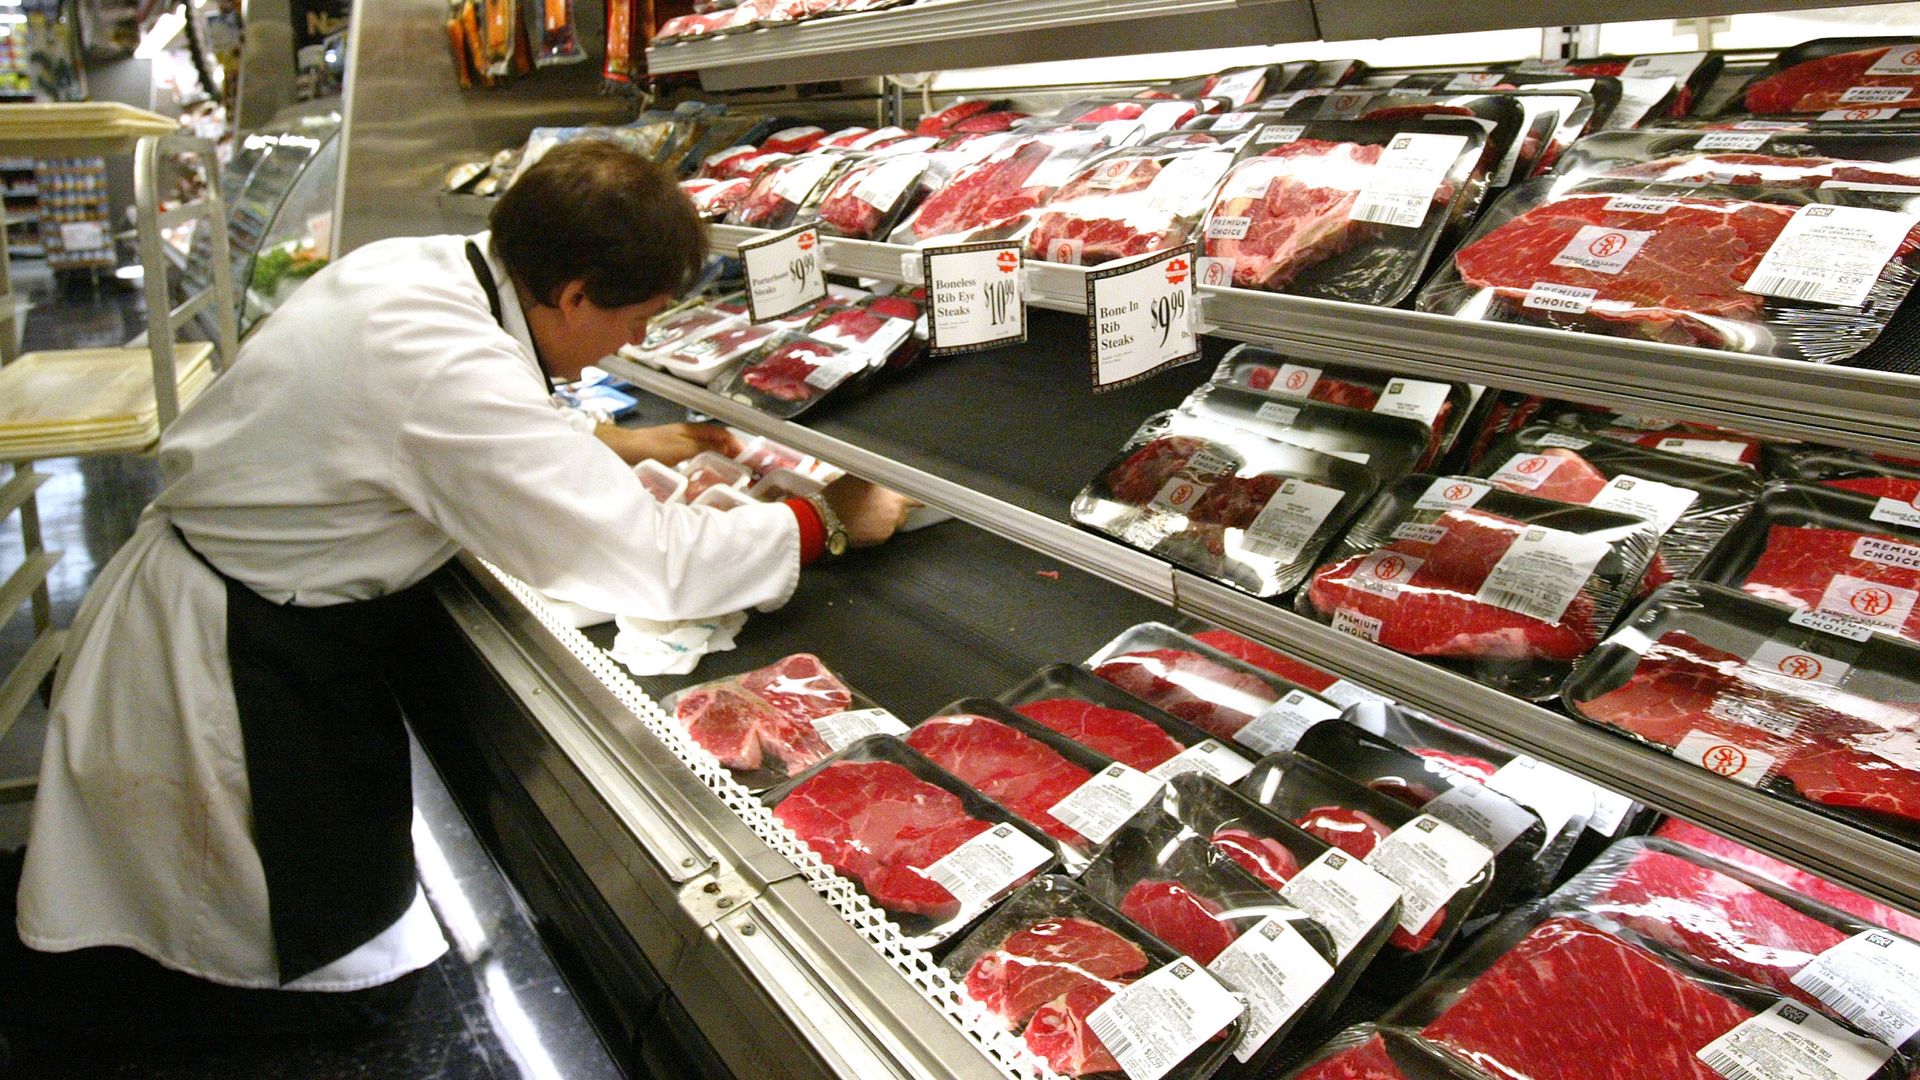 A butcher arranges meat products.